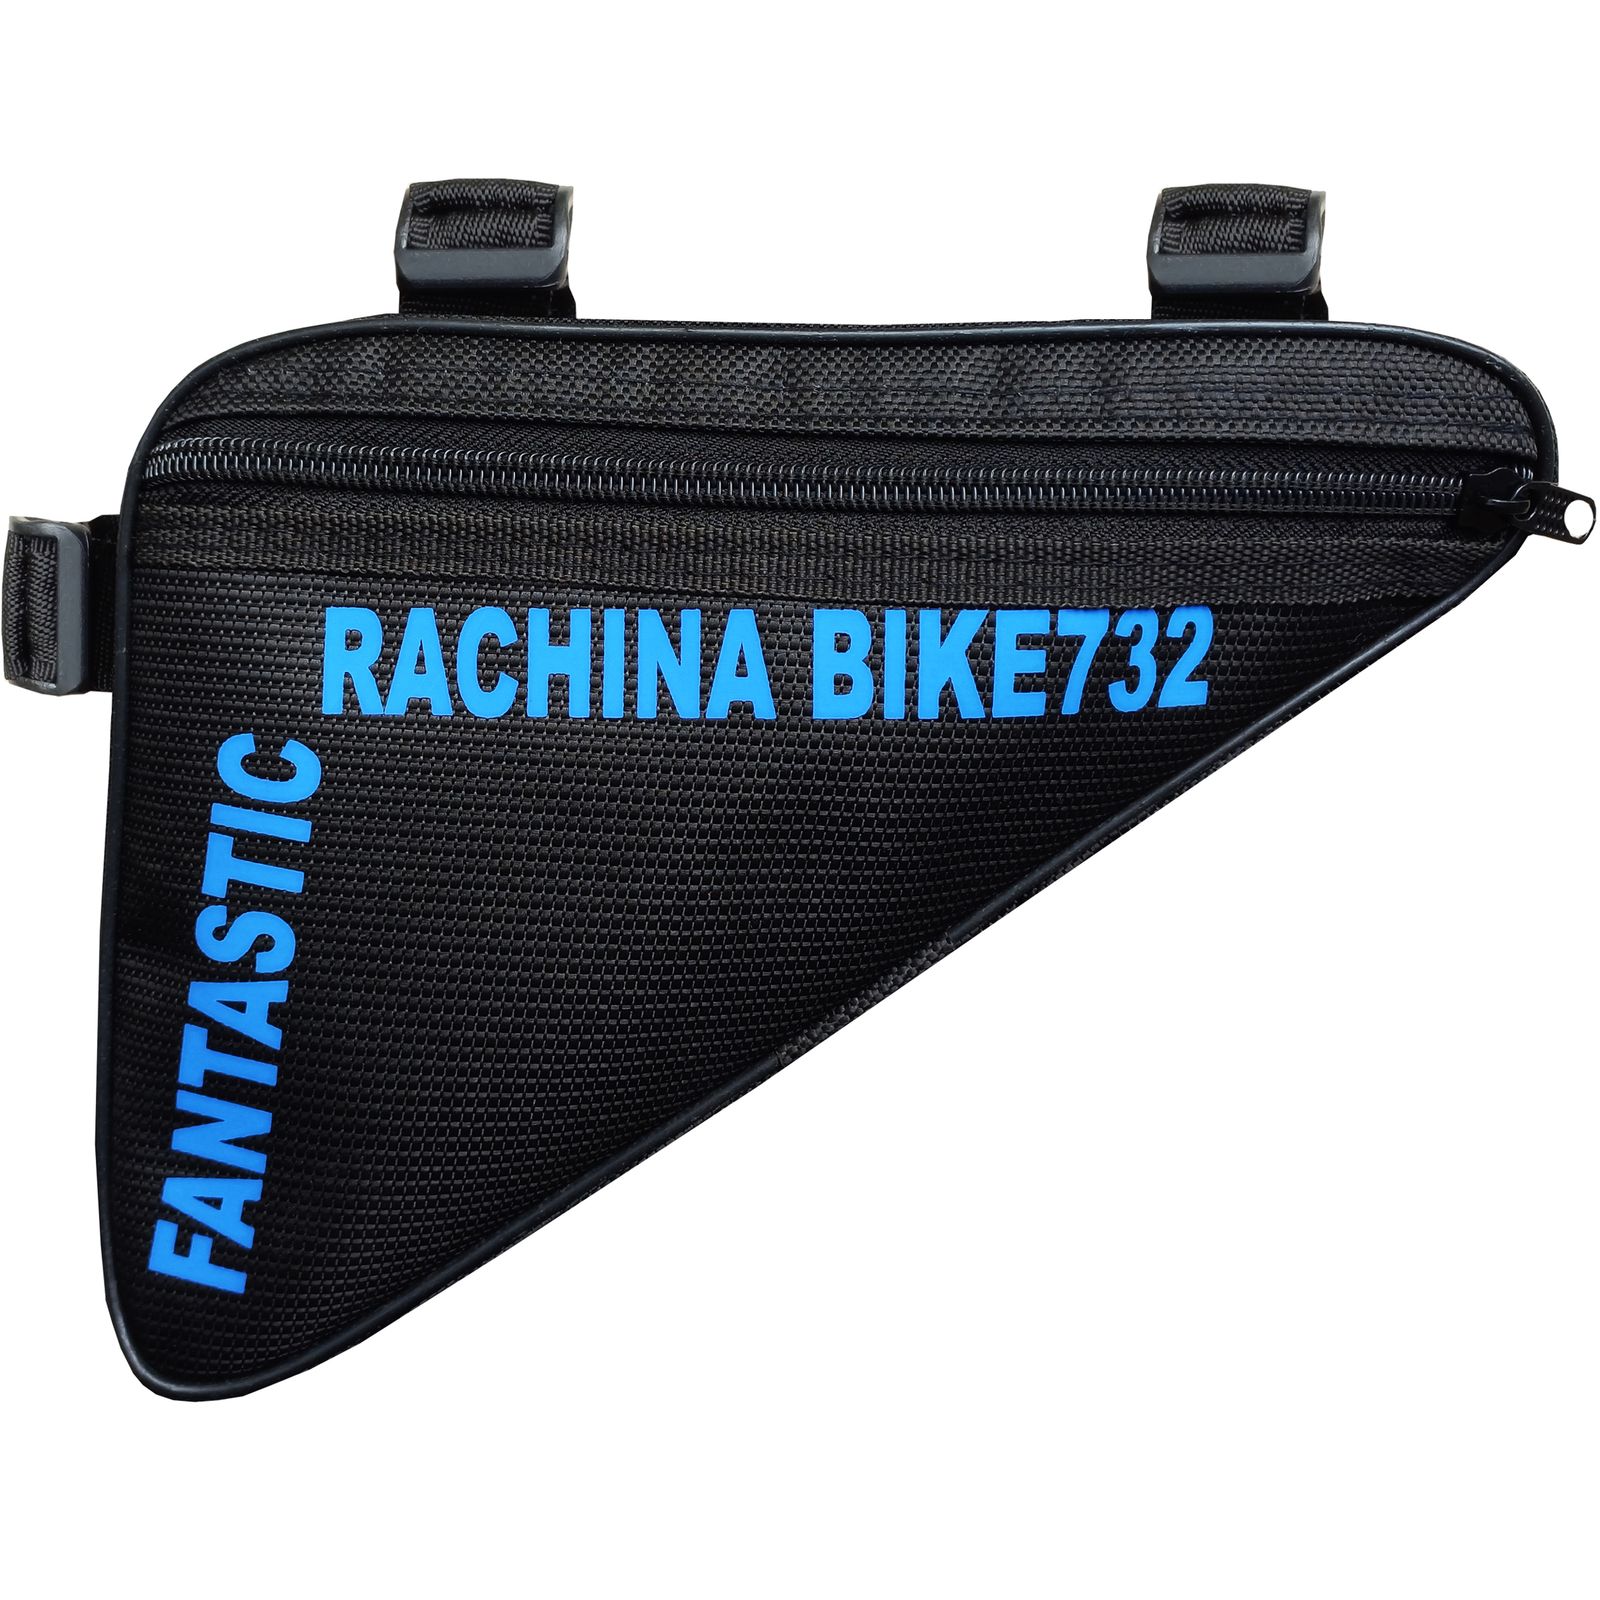 کیف تنه دوچرخه راچینا مدل Rch732 -  - 2